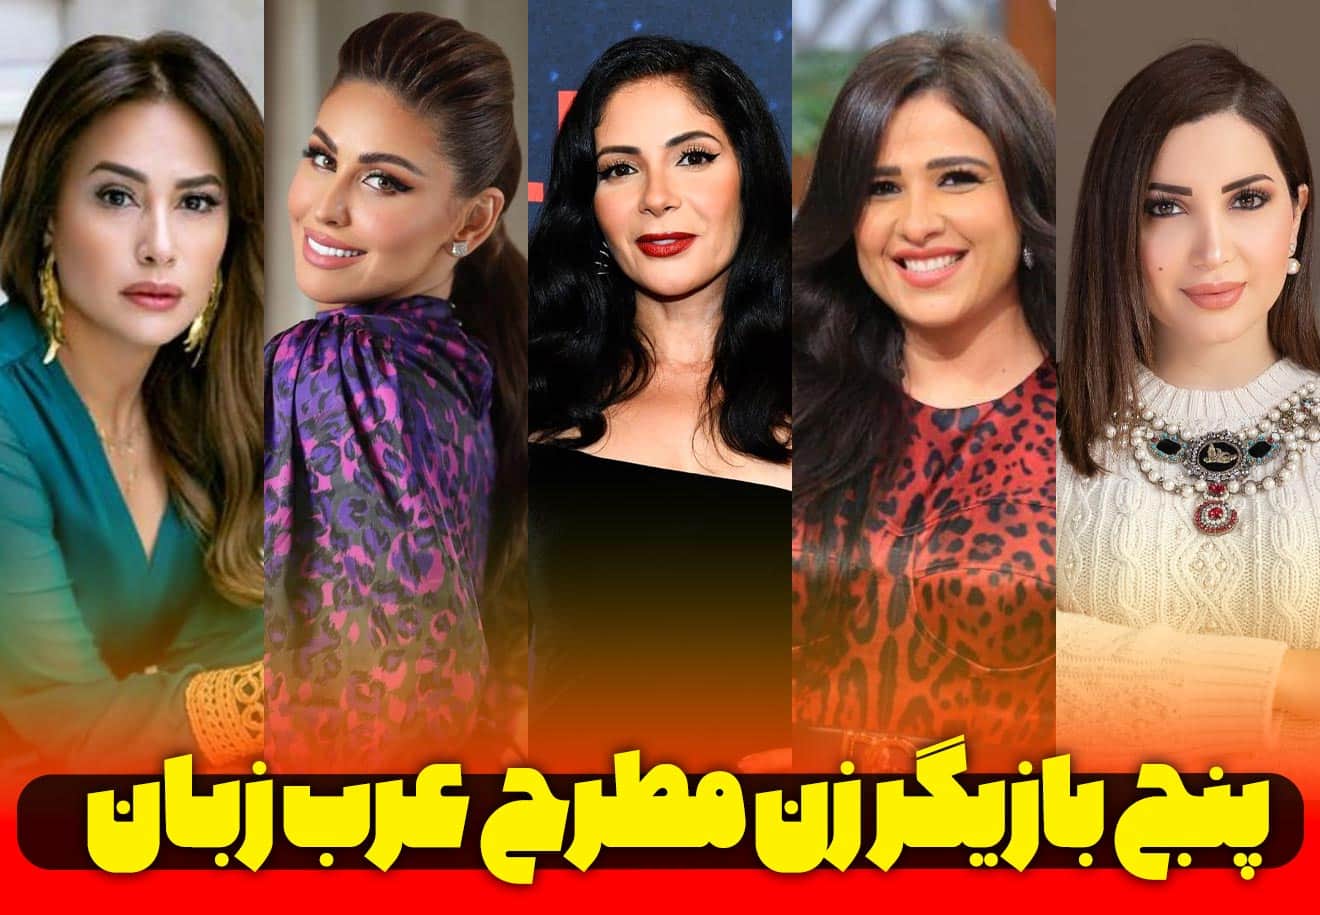 5 بازیگر زن مطرح عرب زبان که در فیلم های عربی نقش آفرینی می کنند.